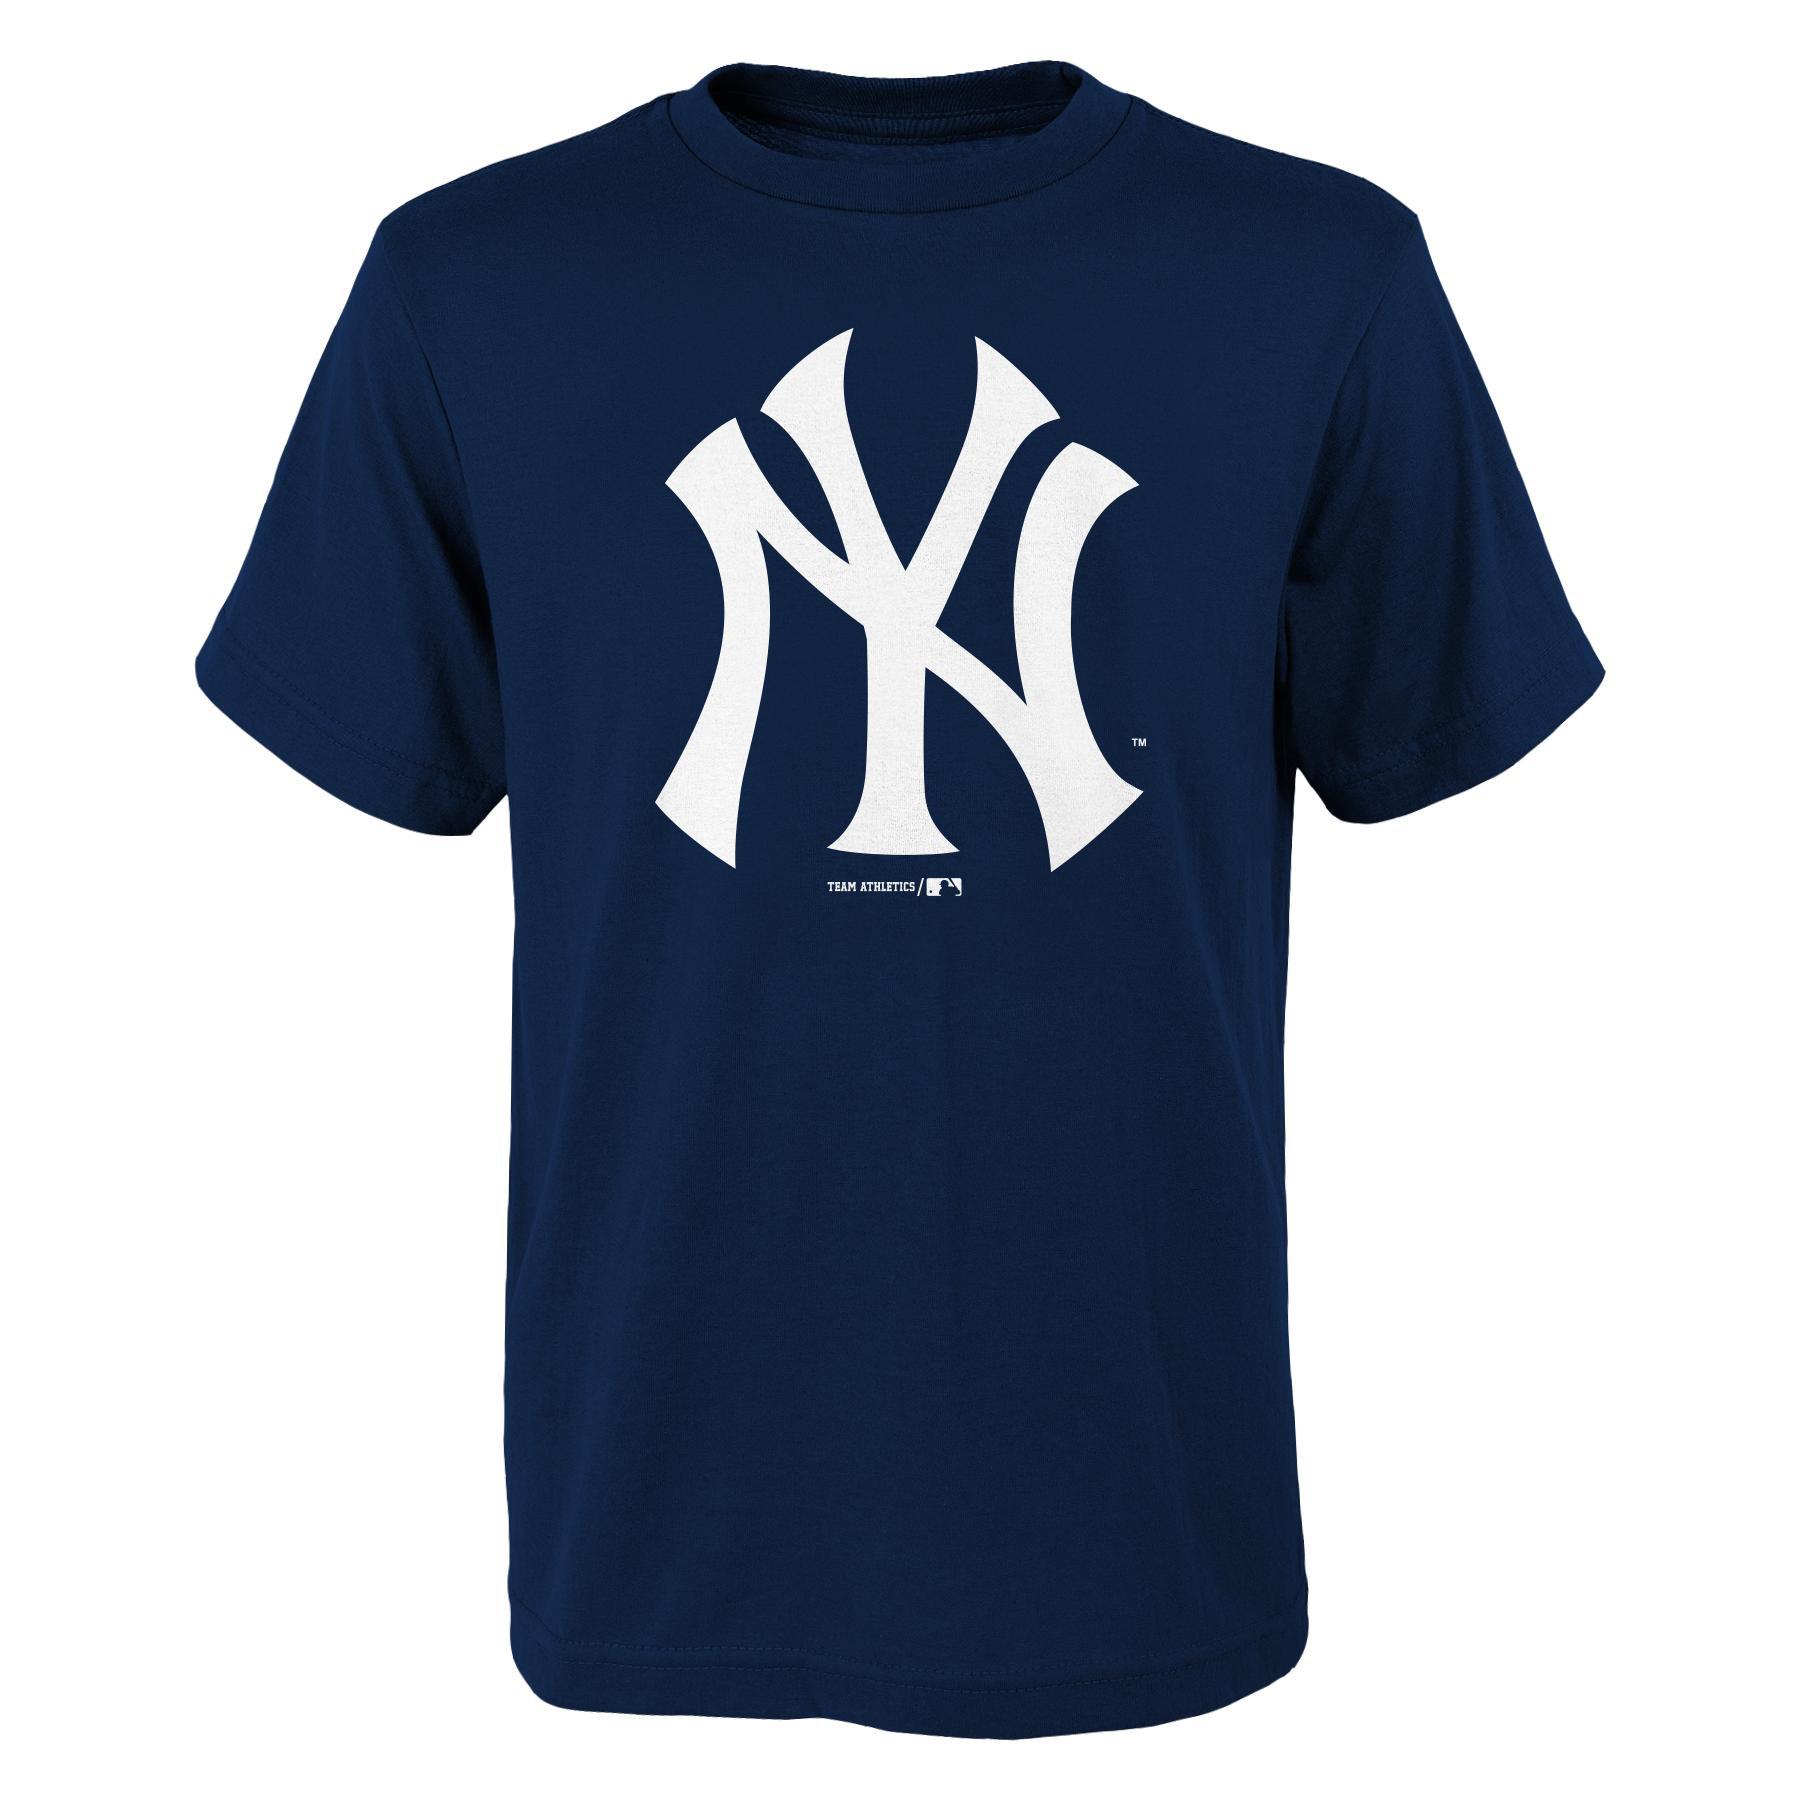 MLB Boy's Graphic T-Shirt - New York Yankees